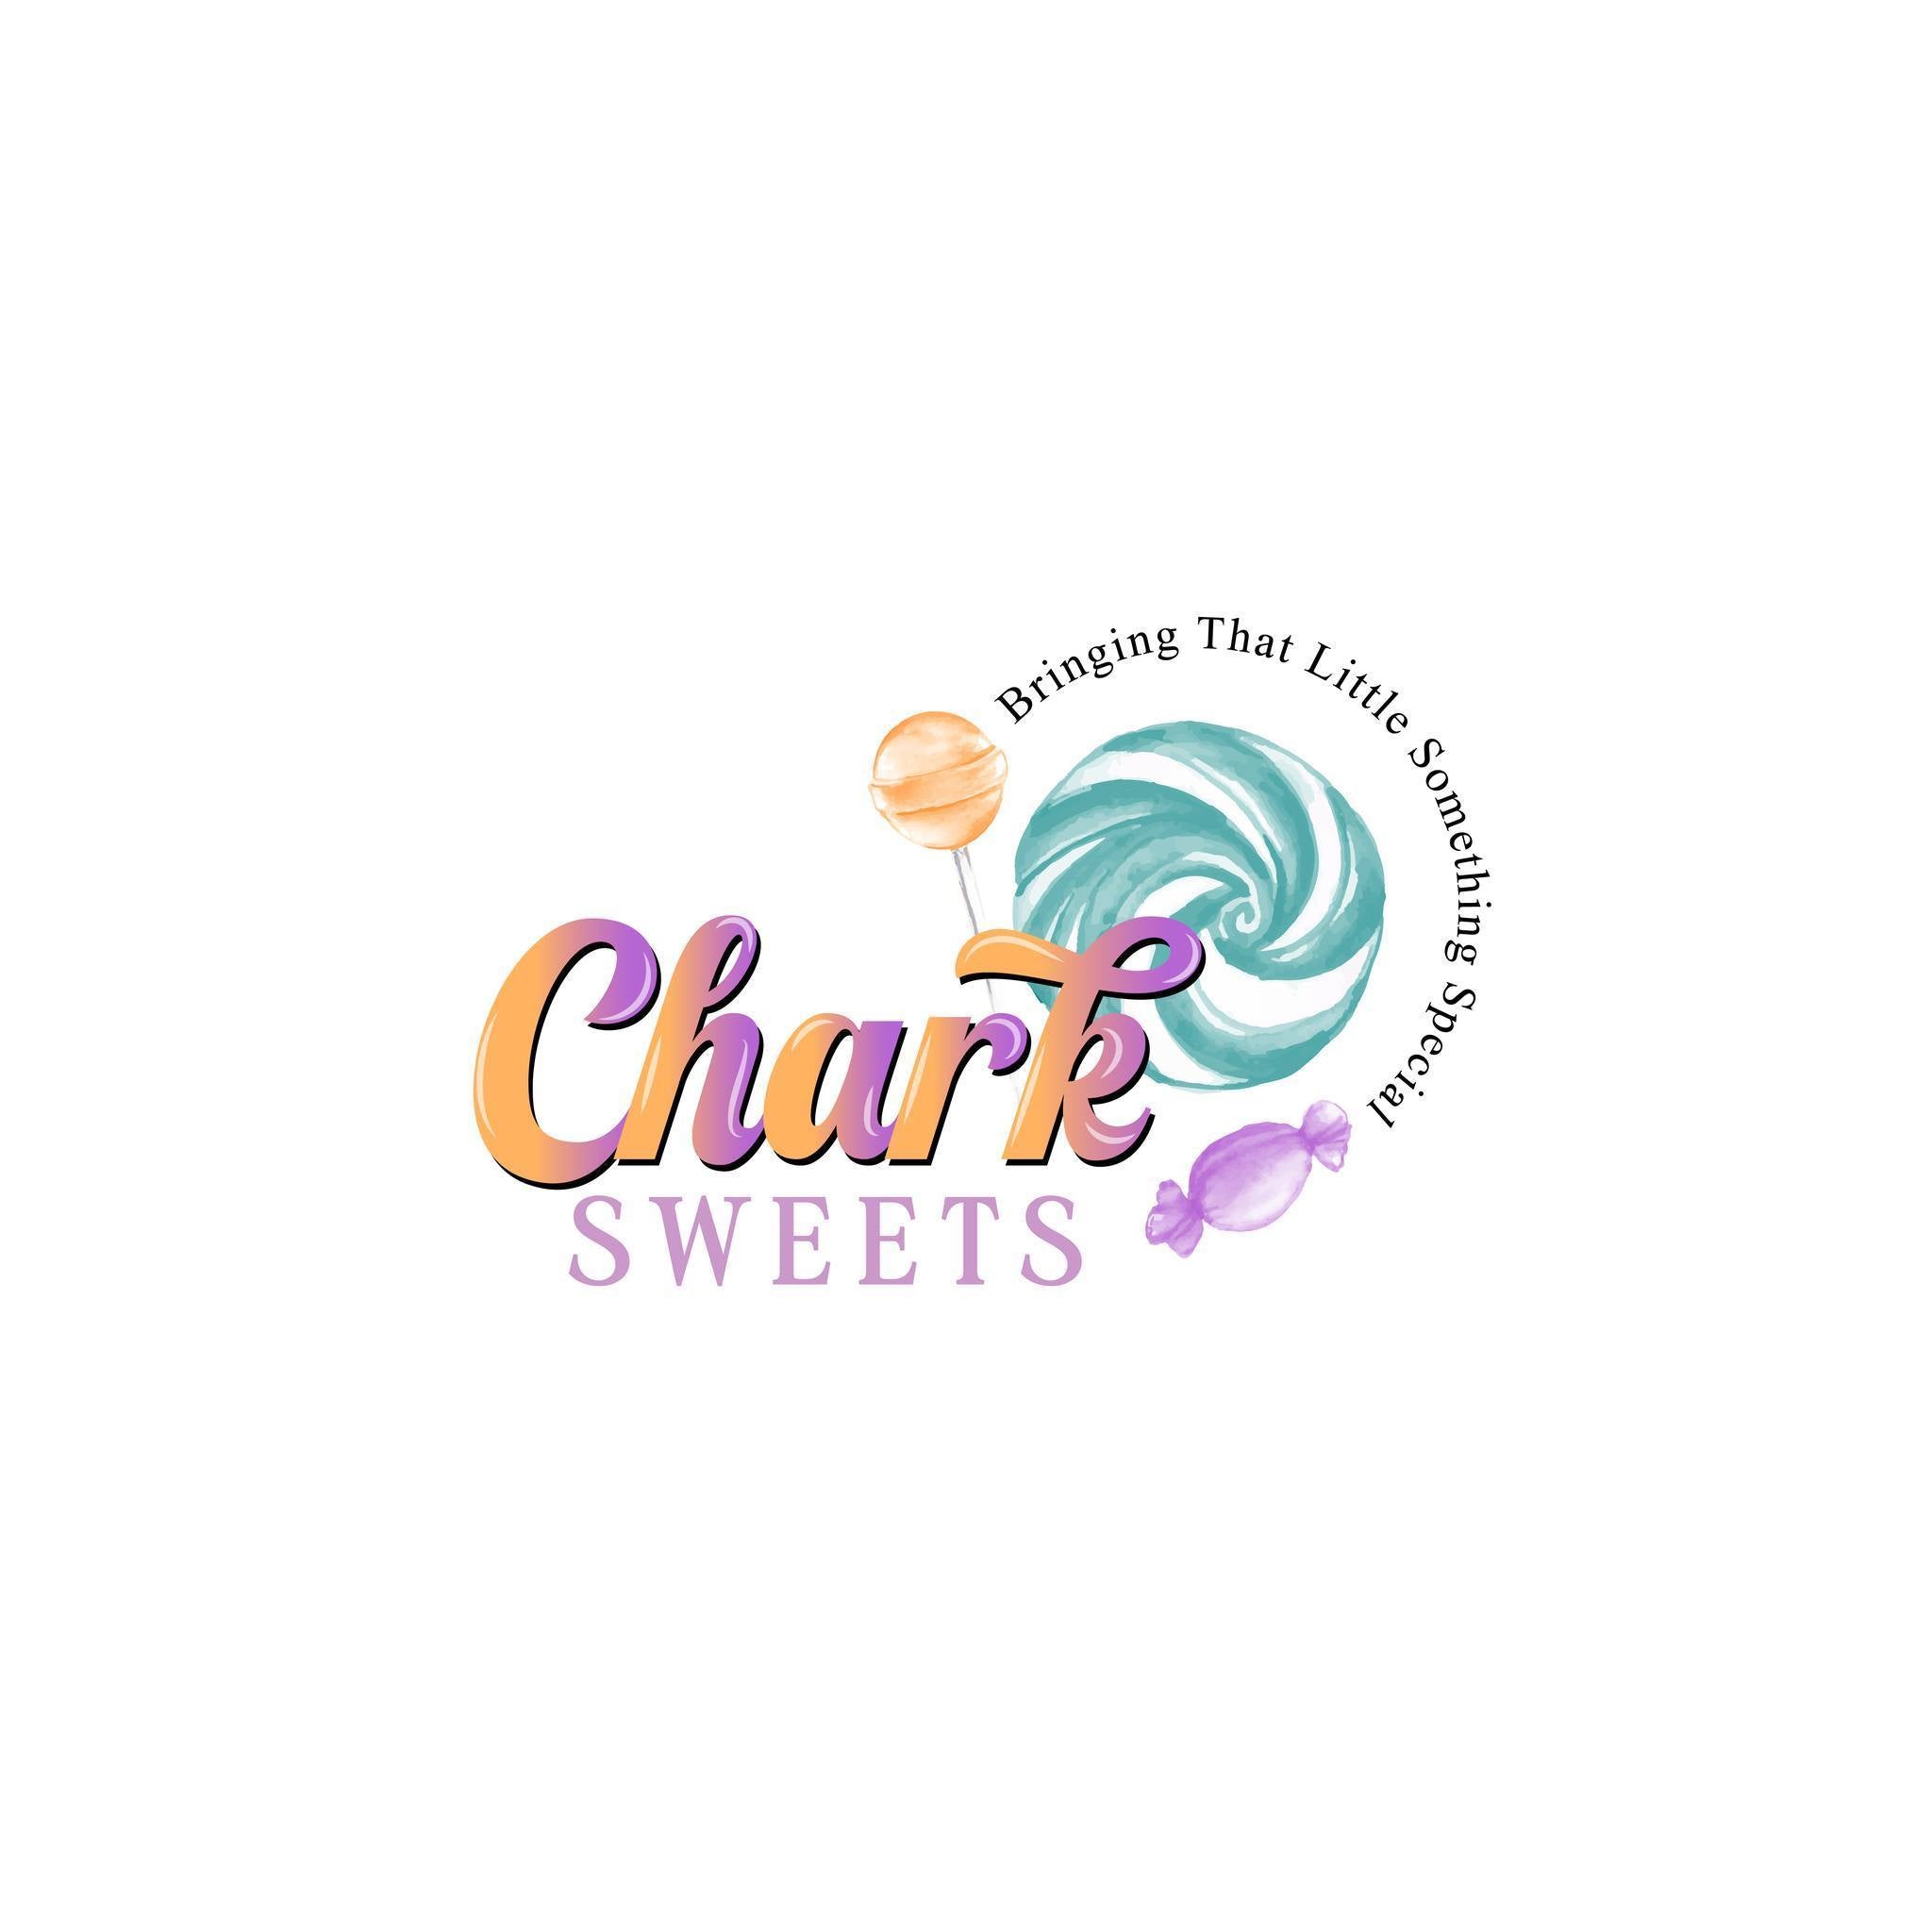 Chark Sweets LTD